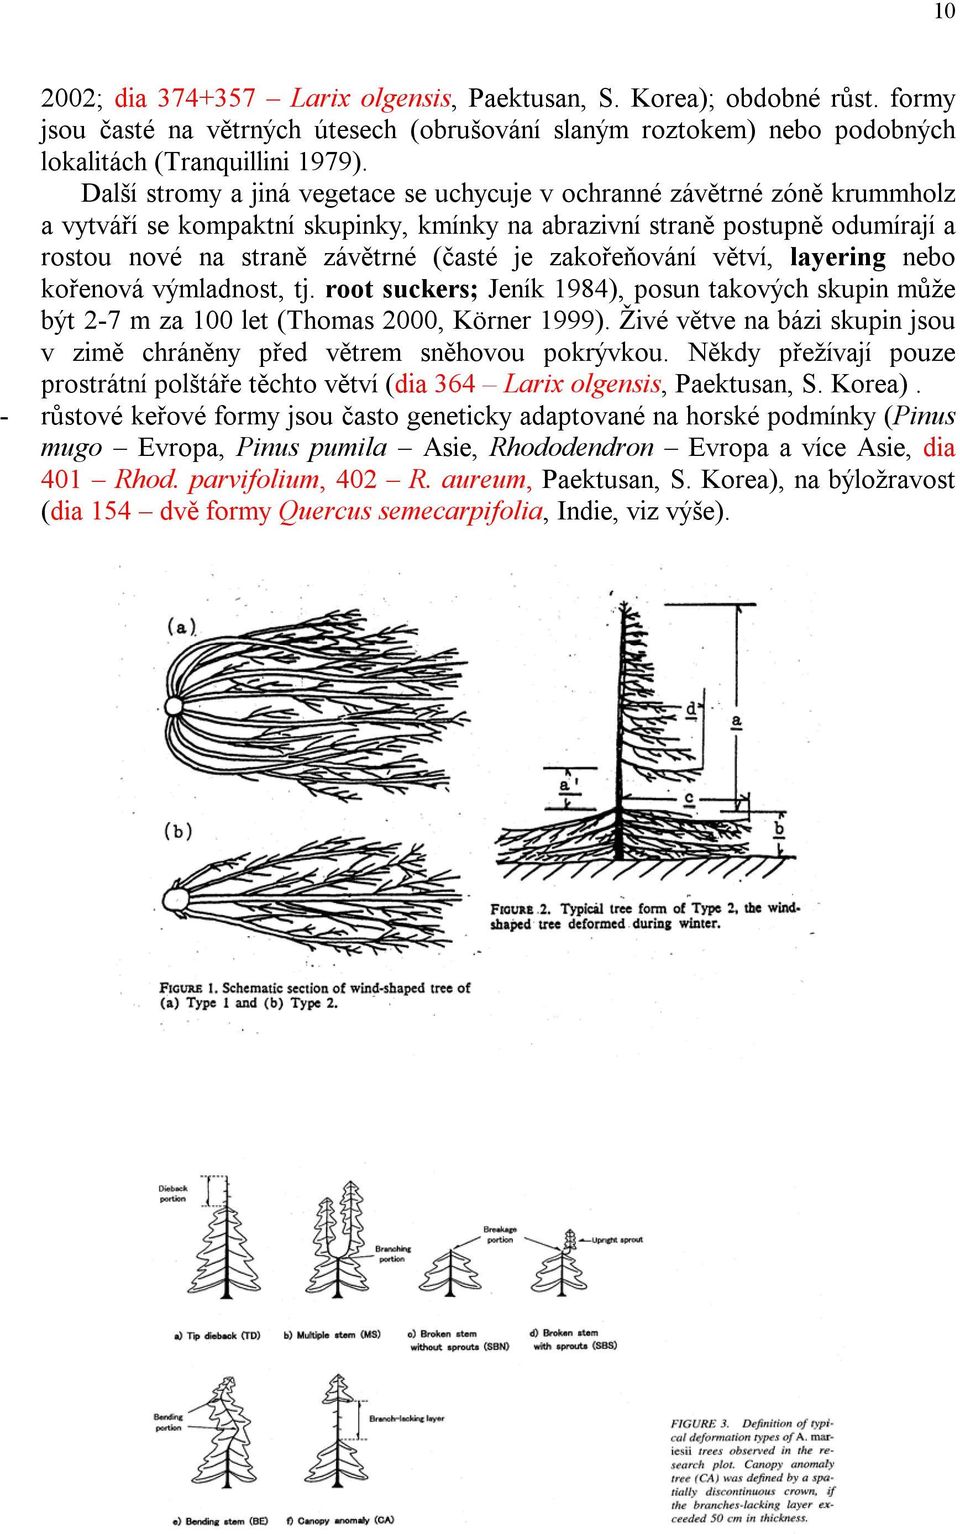 zakořeňování větví, layering nebo kořenová výmladnost, tj. root suckers; Jeník 1984), posun takových skupin může být 2-7 m za 100 let (Thomas 2000, Körner 1999).